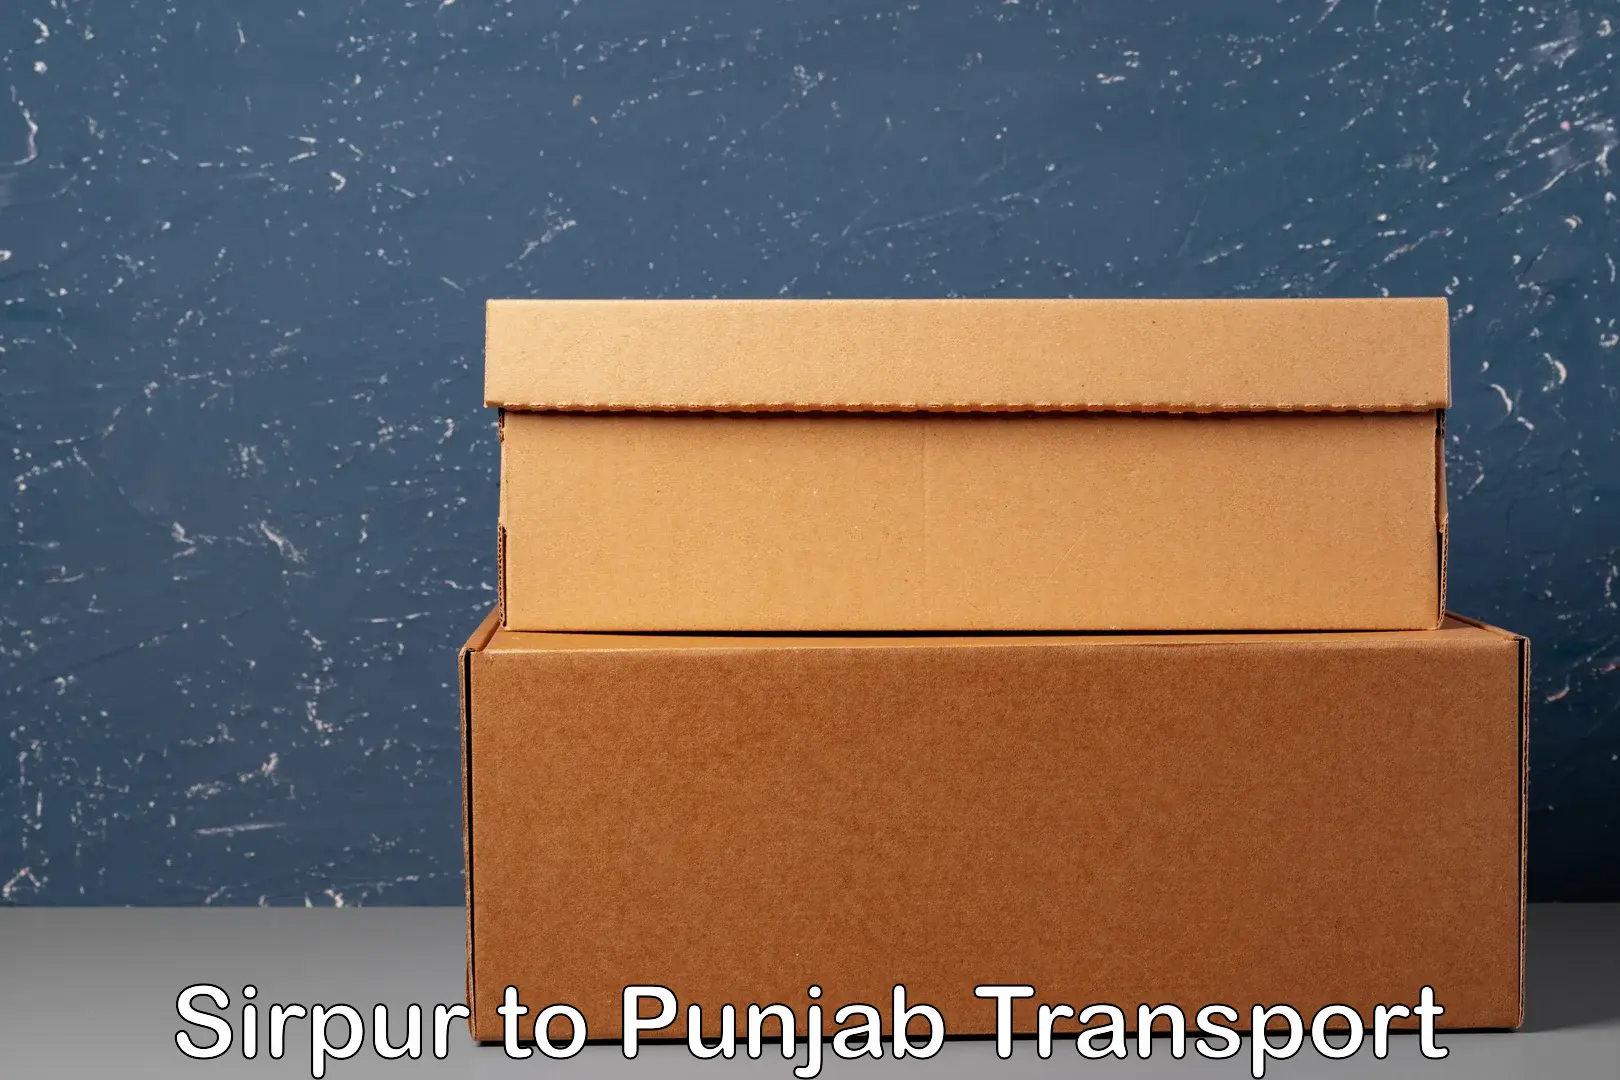 Transport in sharing Sirpur to Punjab